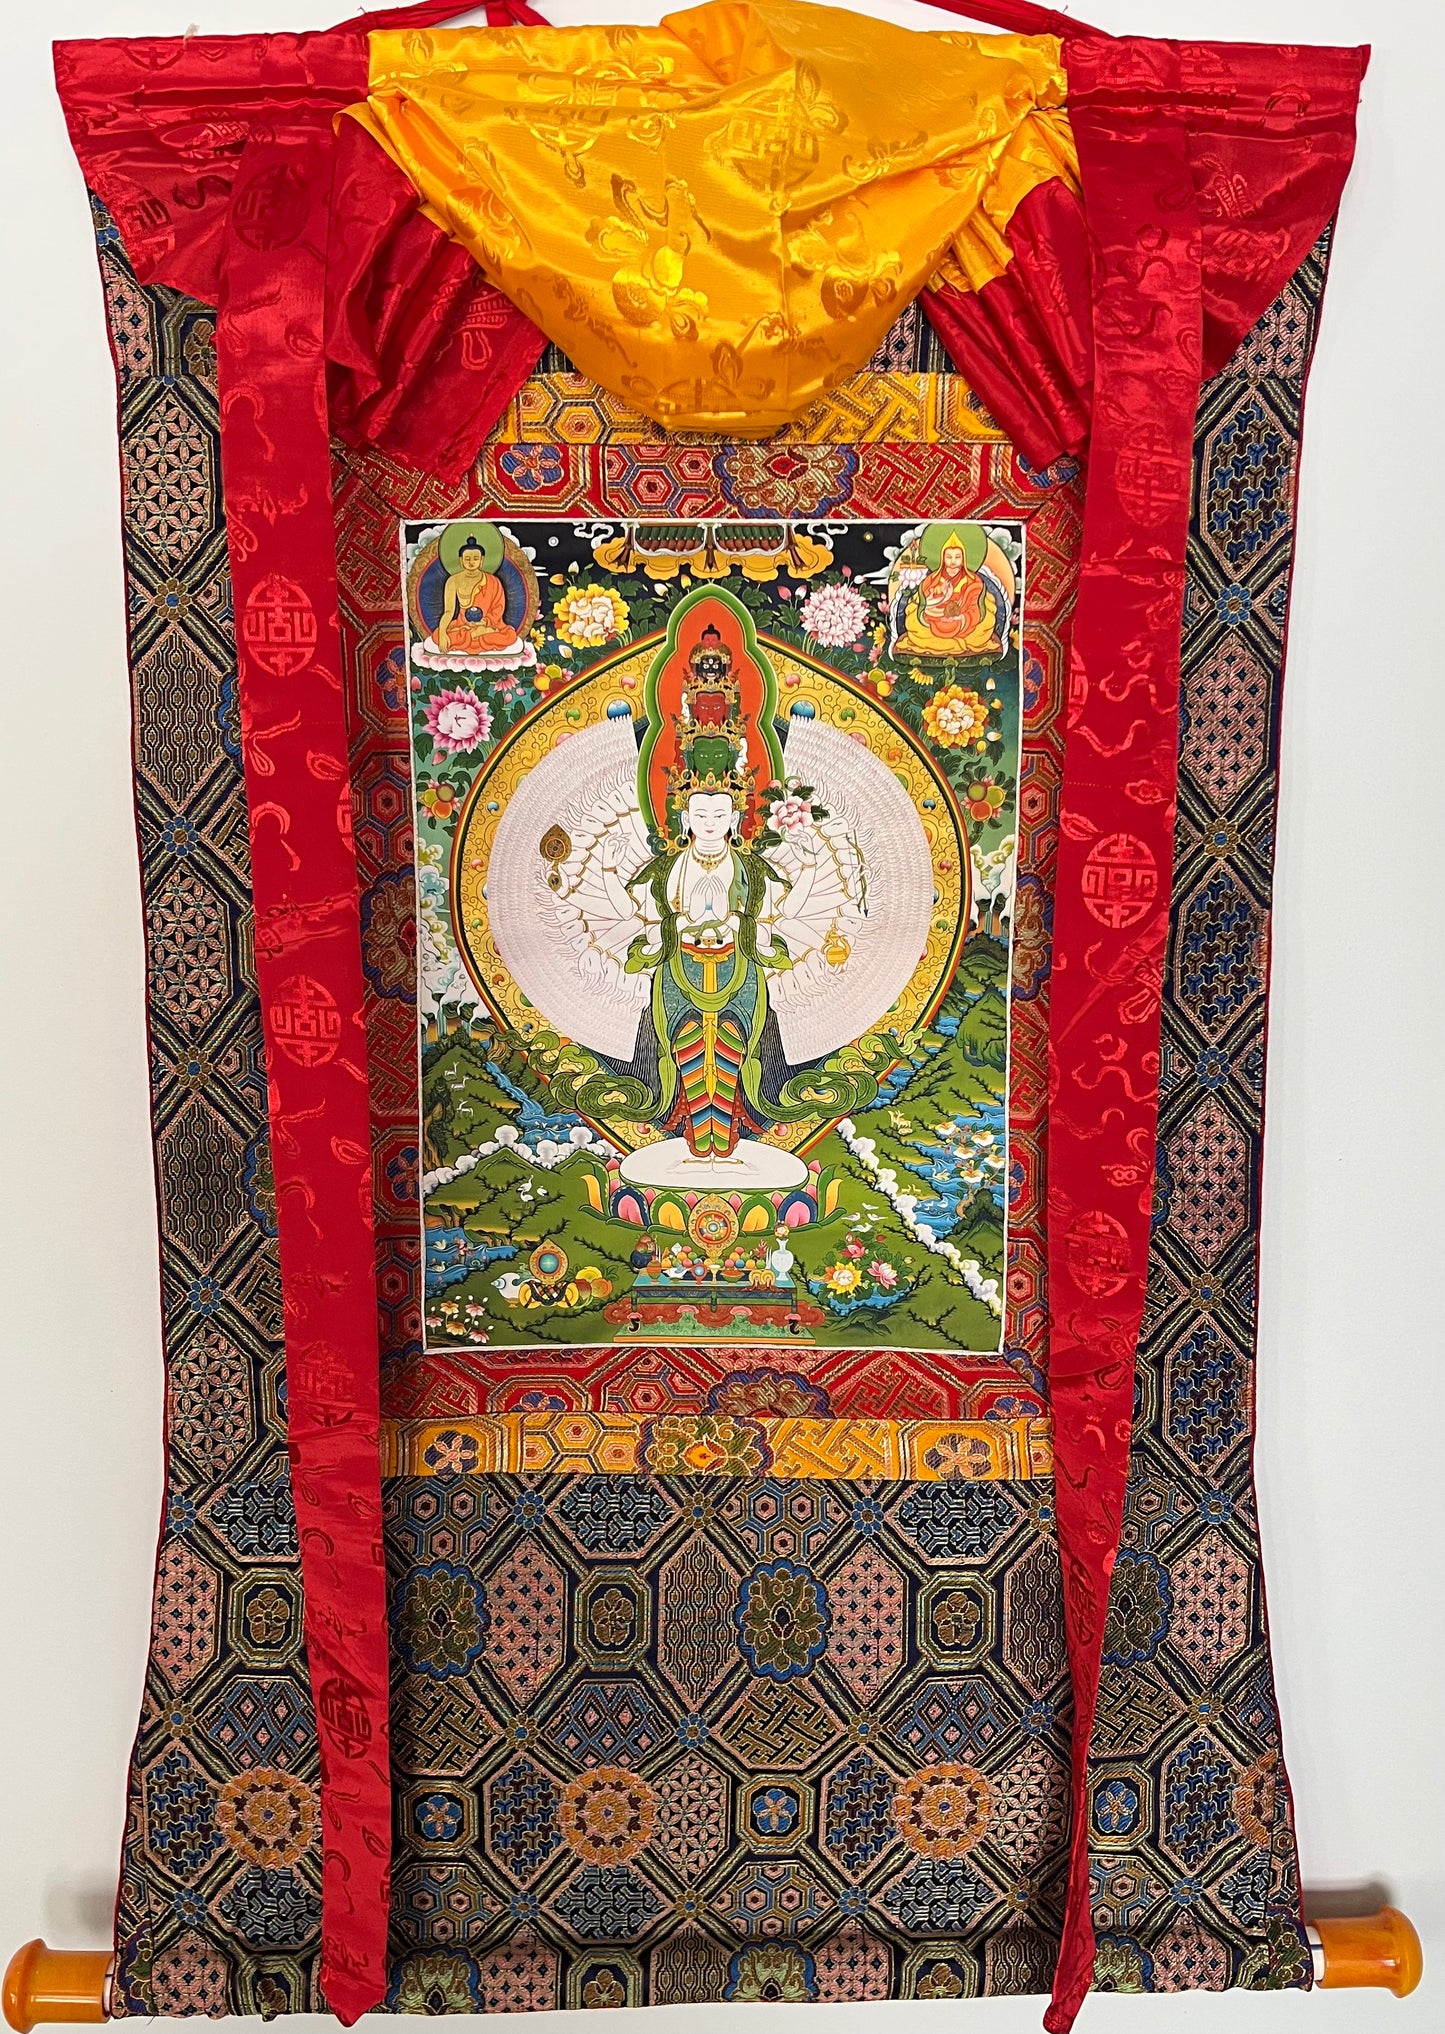 Thousand Armed Avalokiteshvara Art Print Thangka